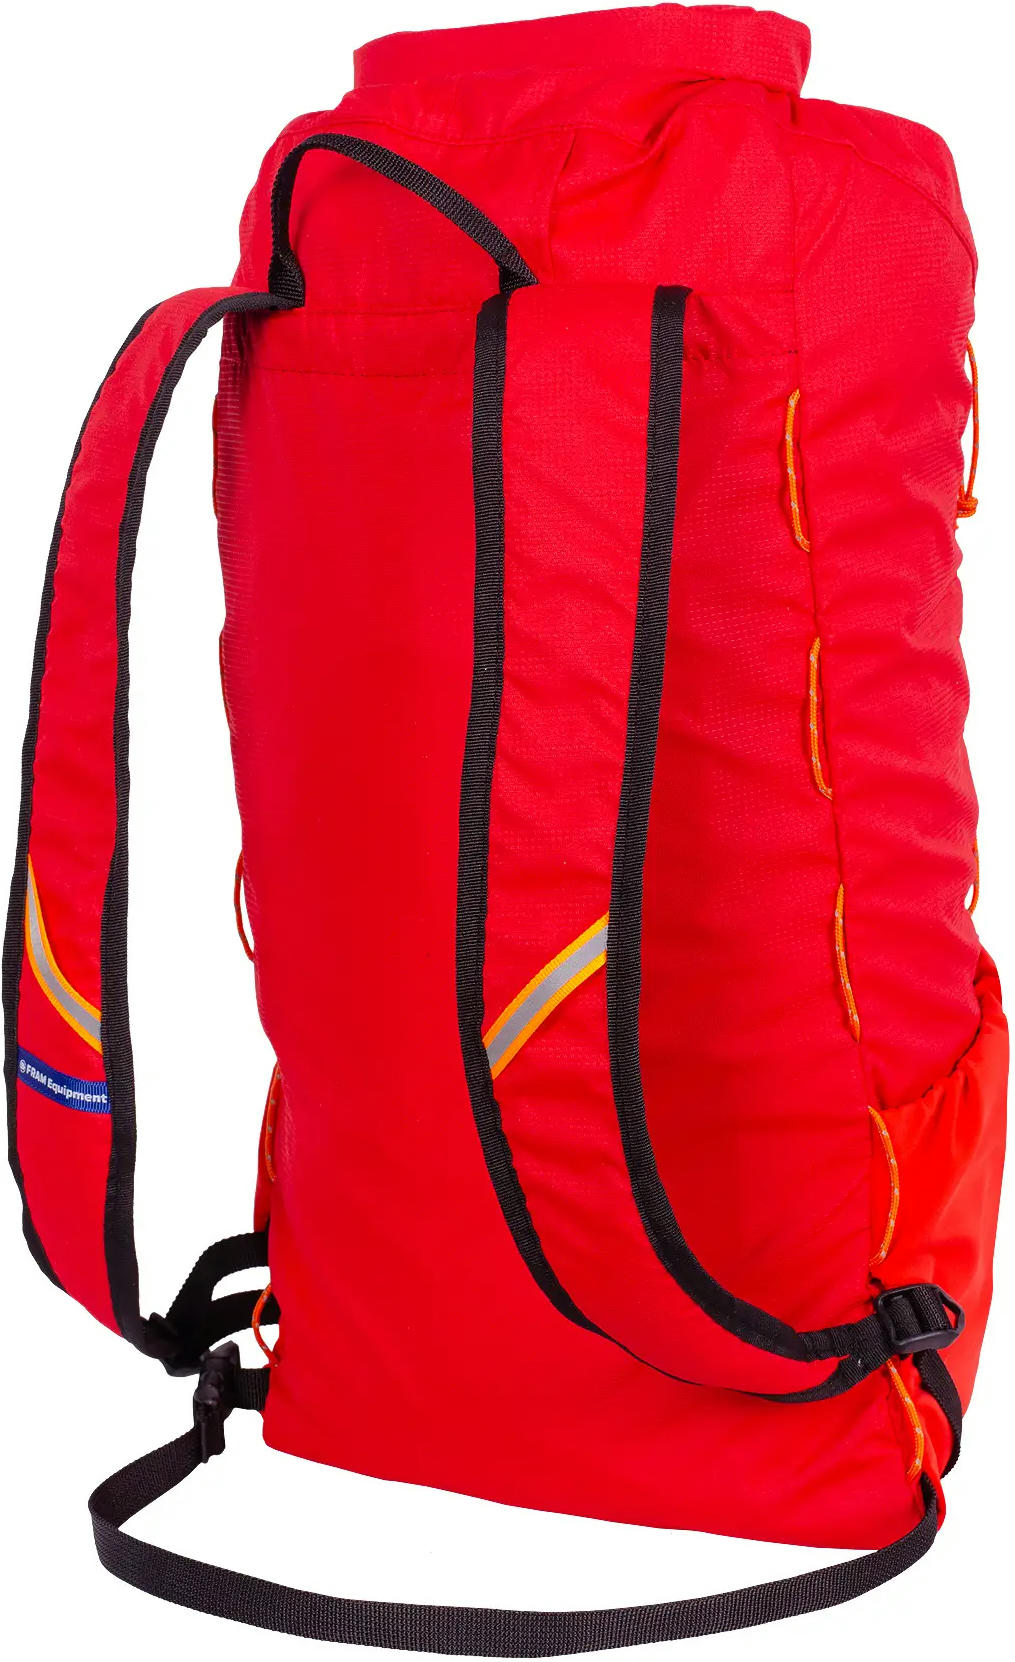 Ультралегкий рюкзак MyPeak Matterhorn 20L красный фото 2